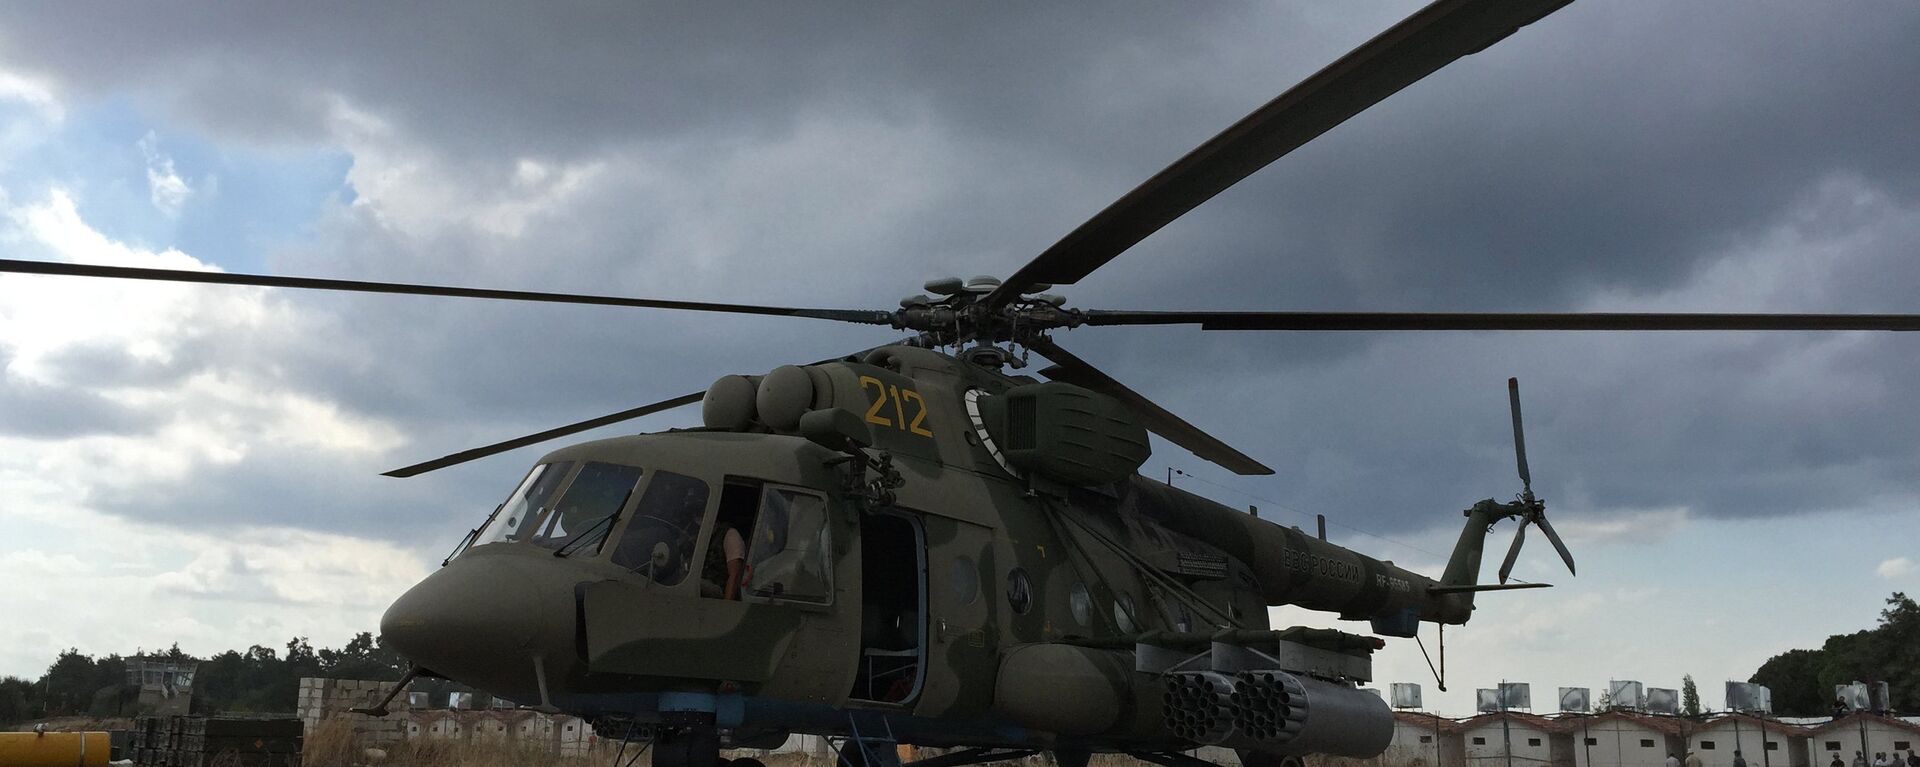 Ruski teretni i borbeni helikopter Mi-8AMShT u sirijskoj bazi Hmejmim  - Sputnik Srbija, 1920, 18.07.2022